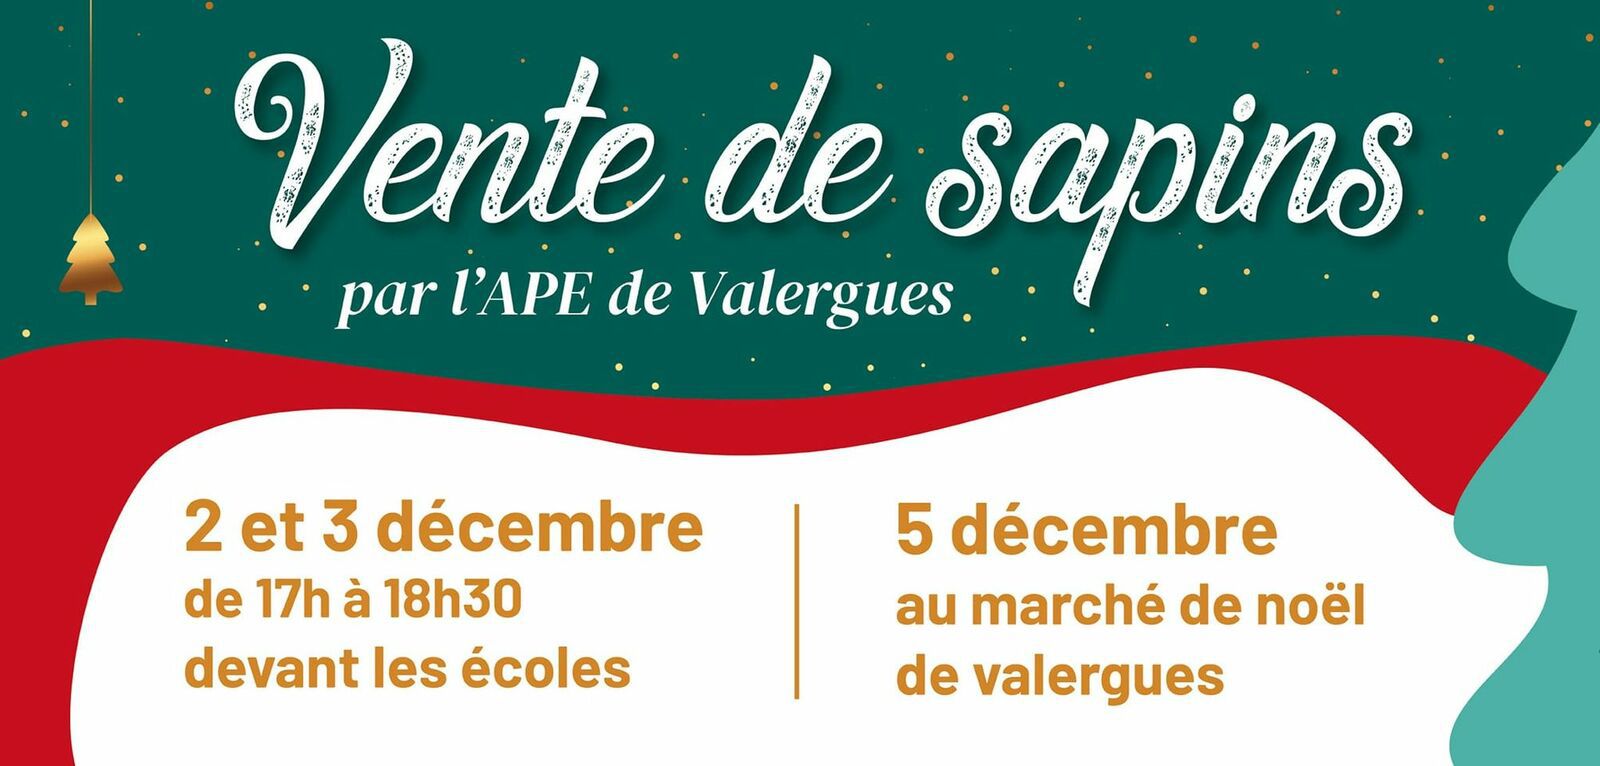 Vente de sapins par l'APE de Valergues les 2,  3 et 5 décembre